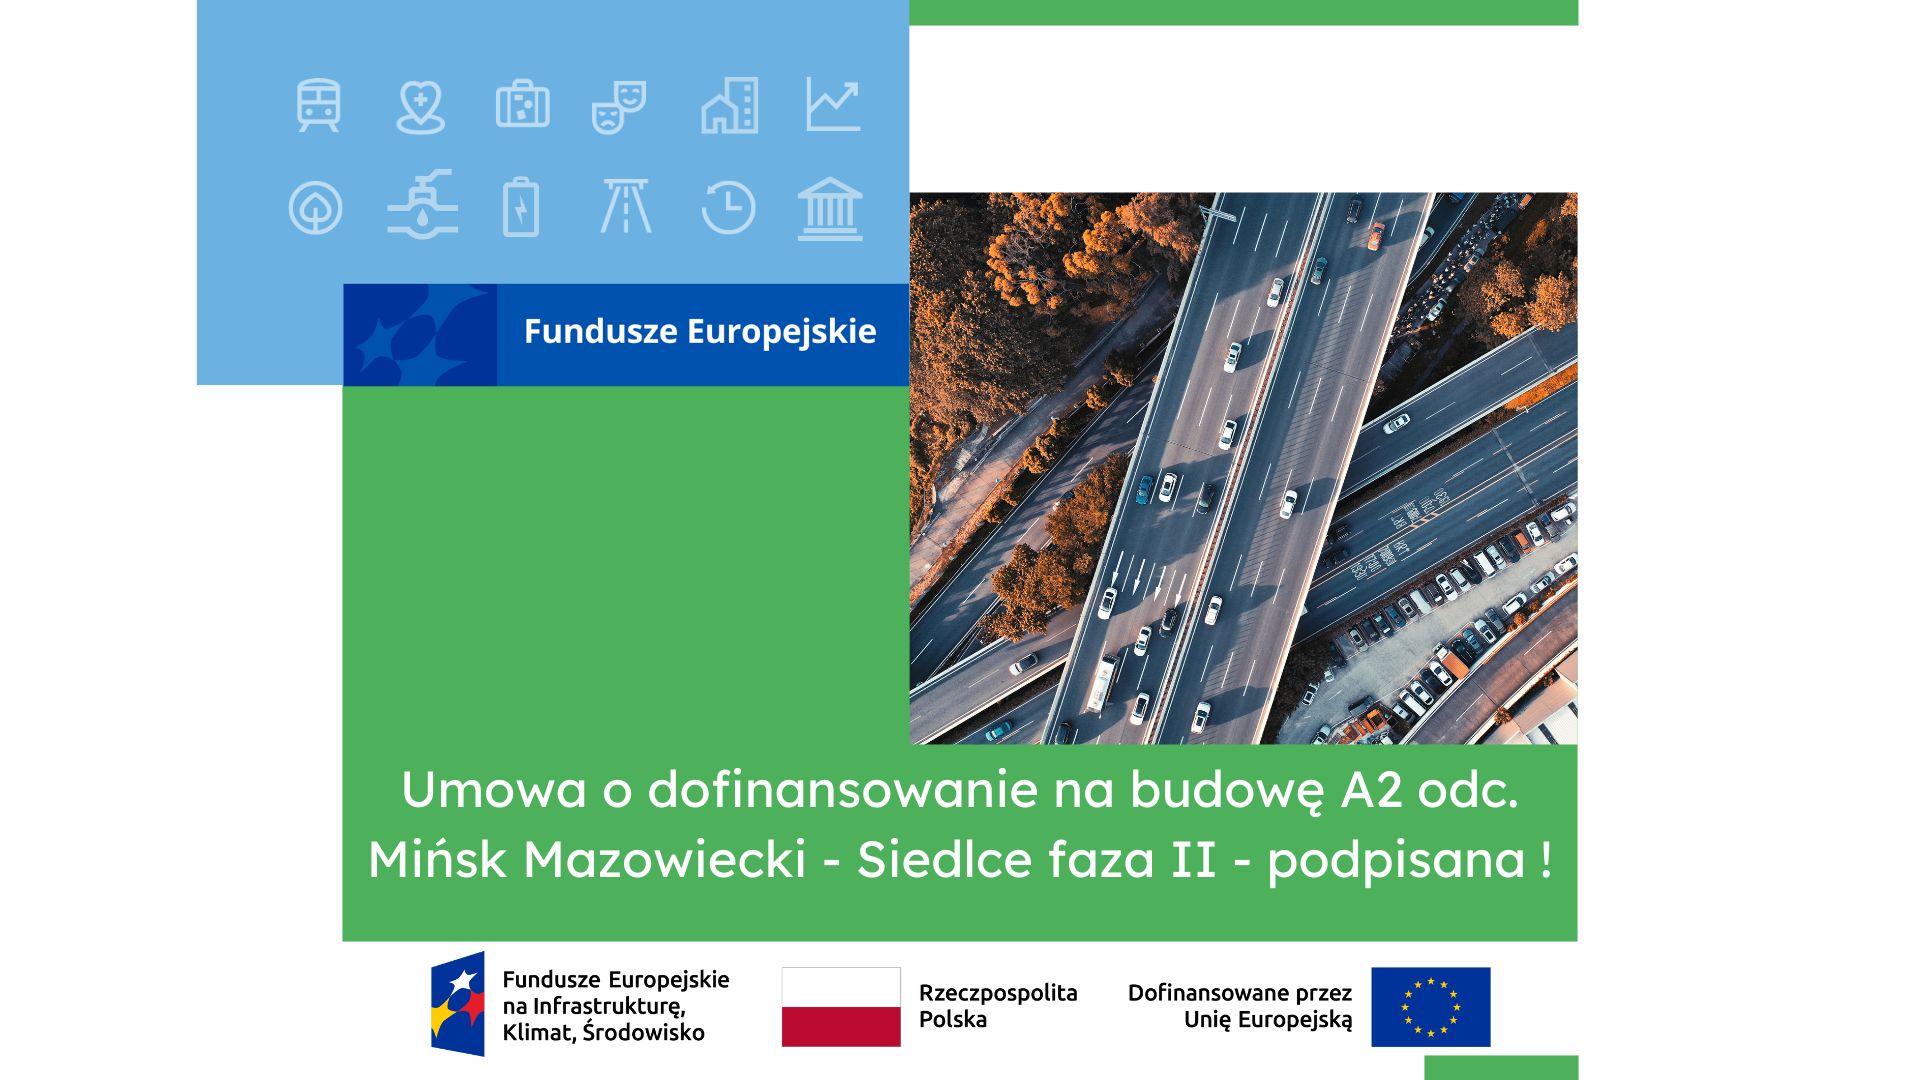 Umowa o dofinansowanie na budowę A2 odcinek Mińsk Mazowiecki - Siedlce faza II podpisana. Po prawej stronie zdjęcie autostrady